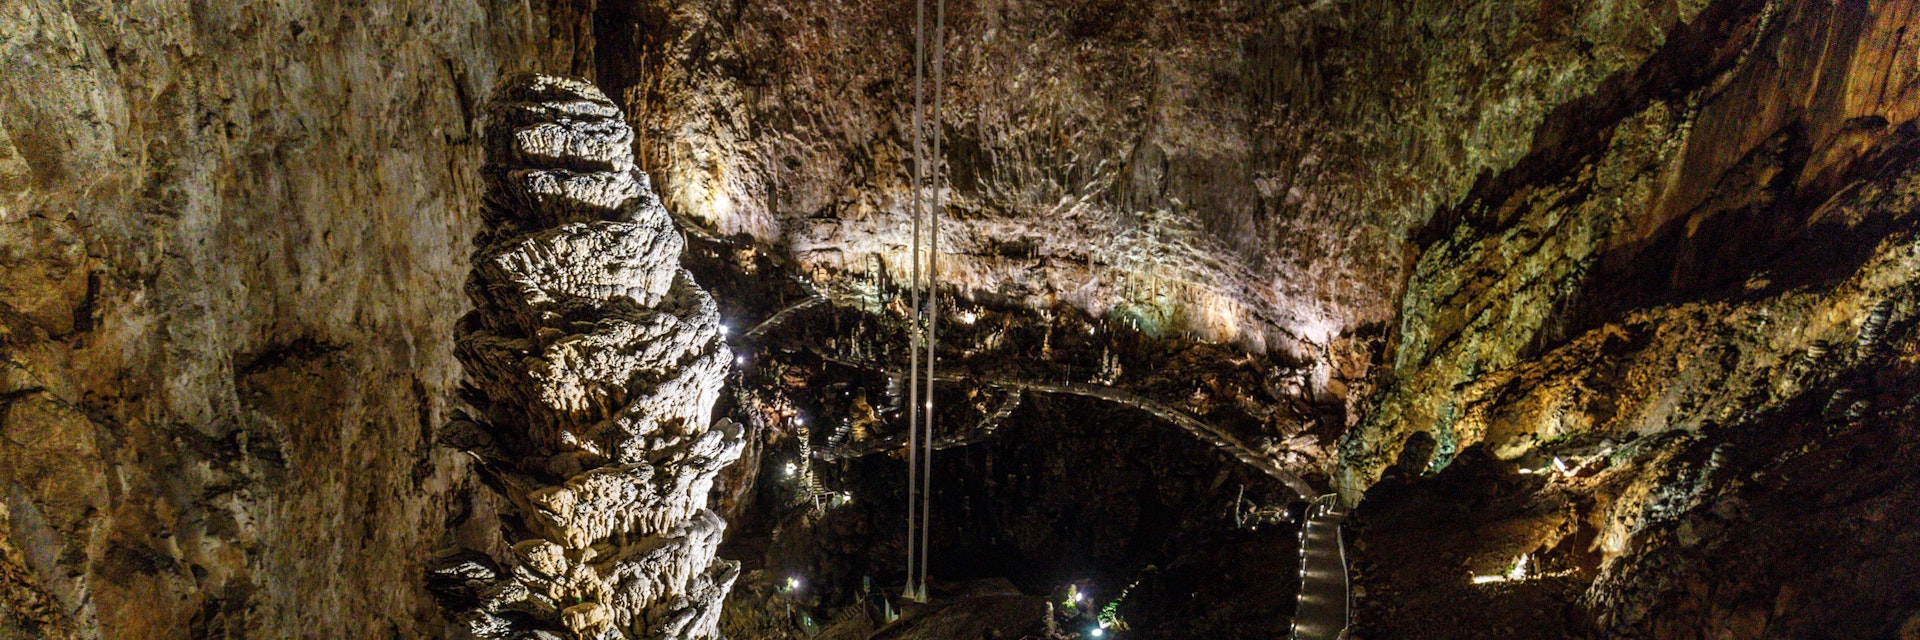 Grotta gigante